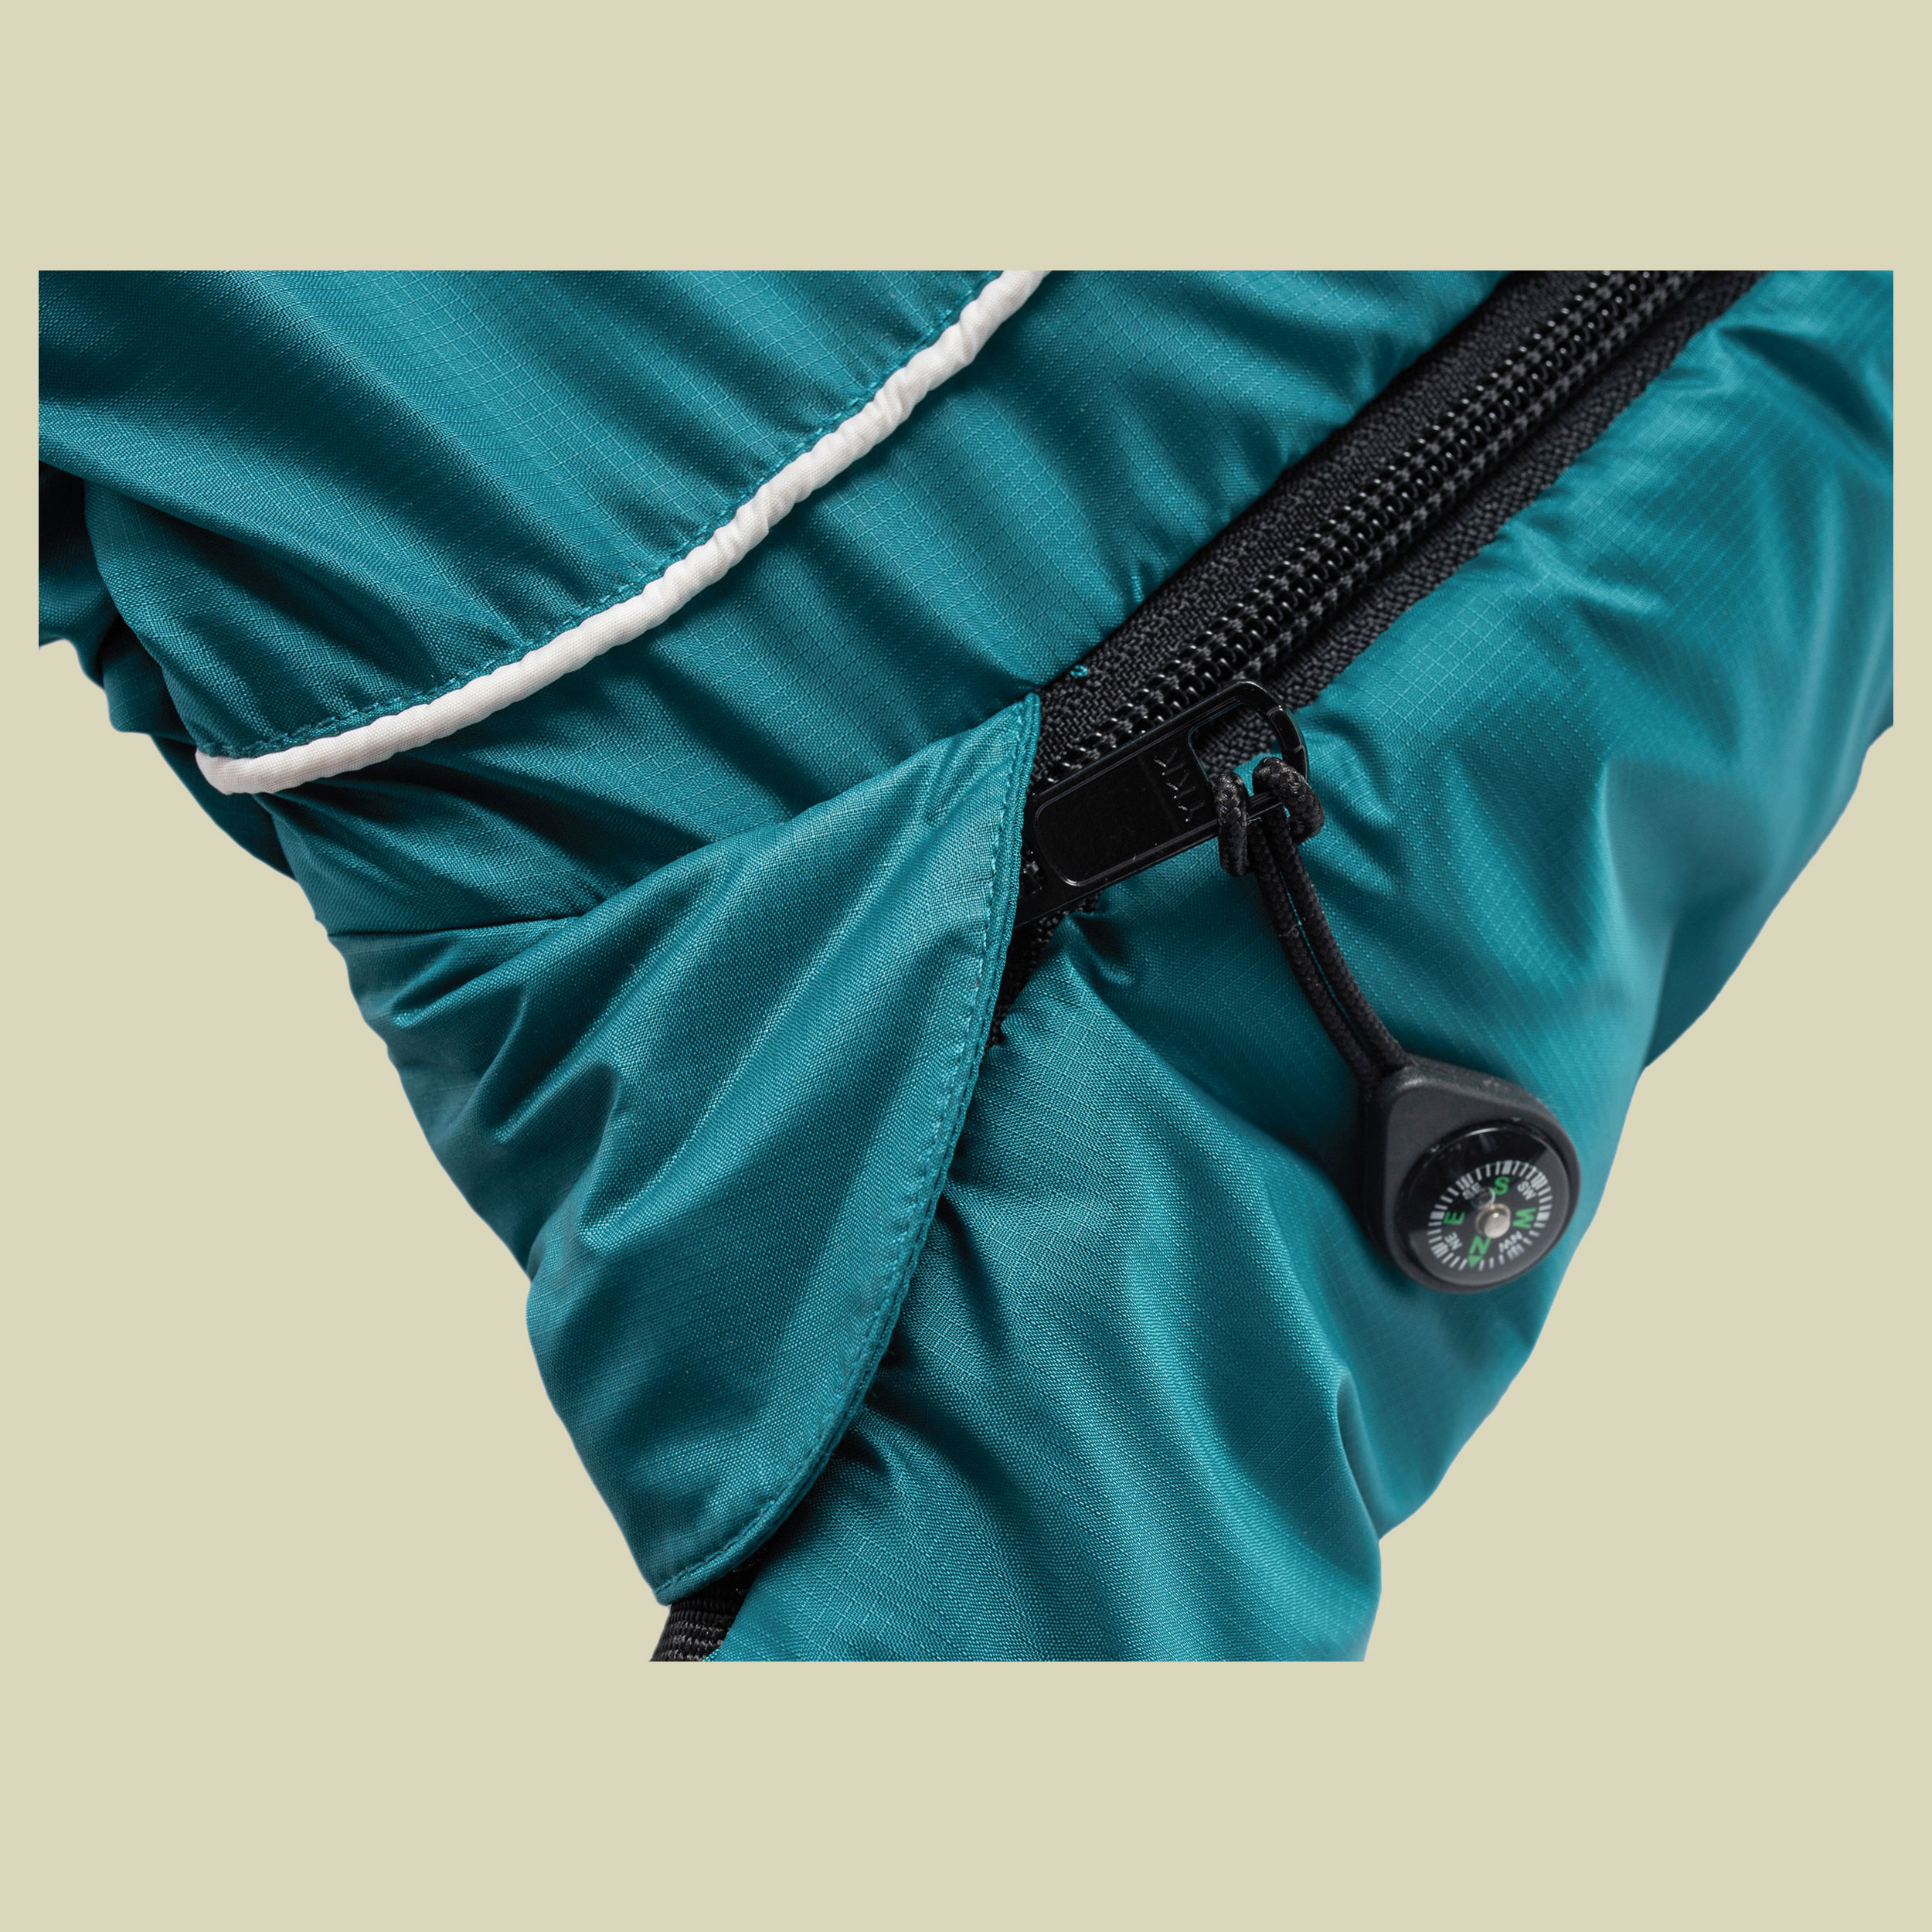 Biopod Wolle Goas Comfort bis Körpergröße Schlafsack 191 cm cm Farbe dark petrol, Reißverschluss Schlafsack rechts